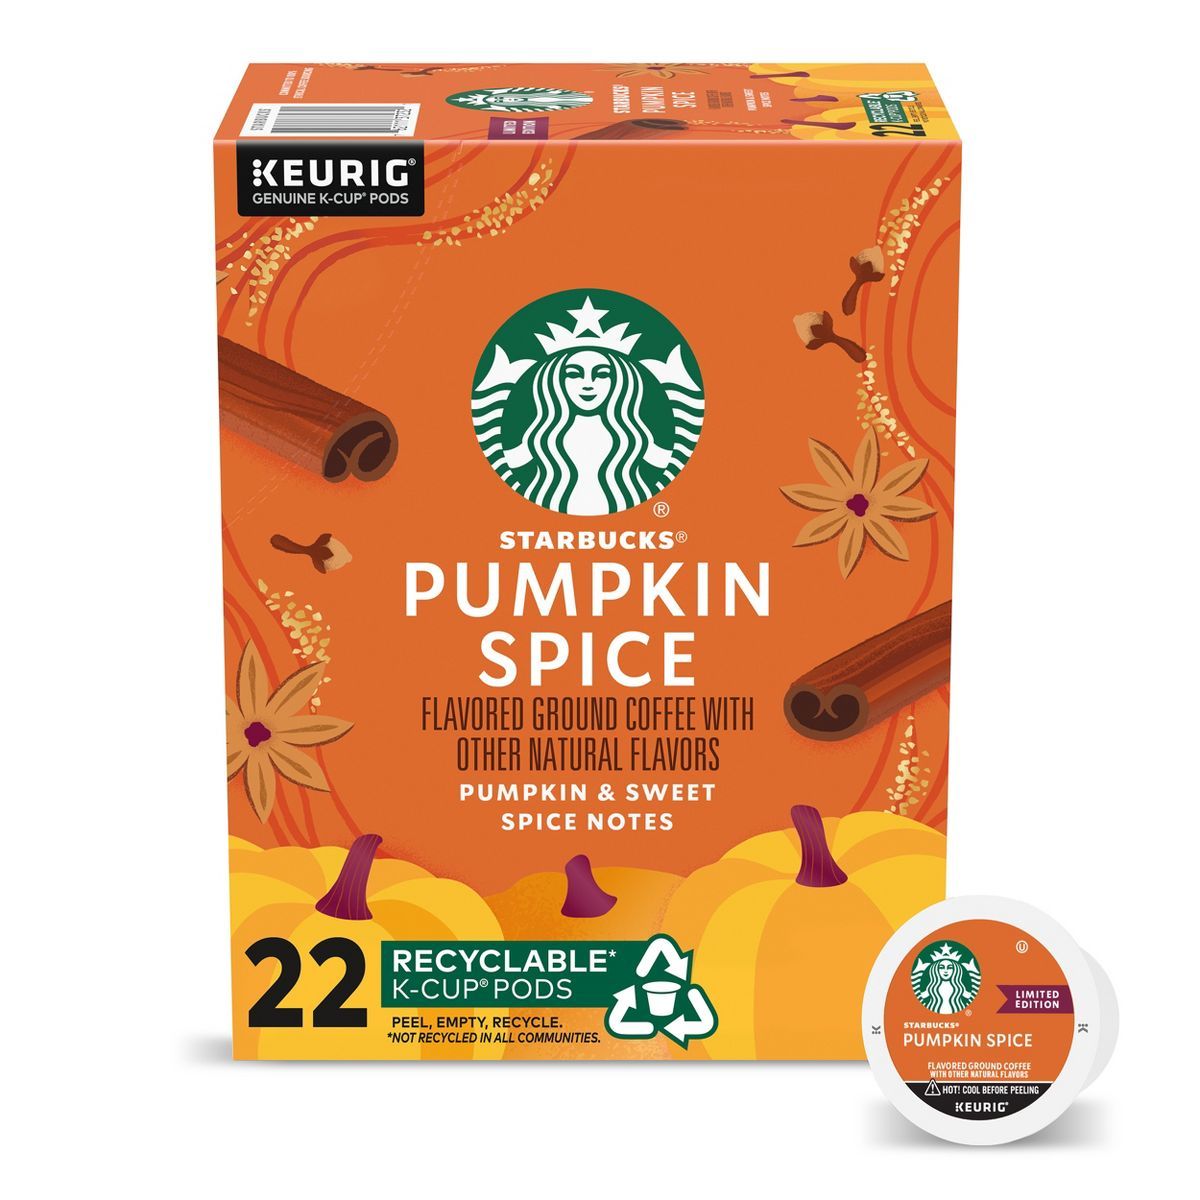 Starbucks Pumpkin Spice Medium Roast Coffee - Keurig K-Cup Pods - 22ct | Target